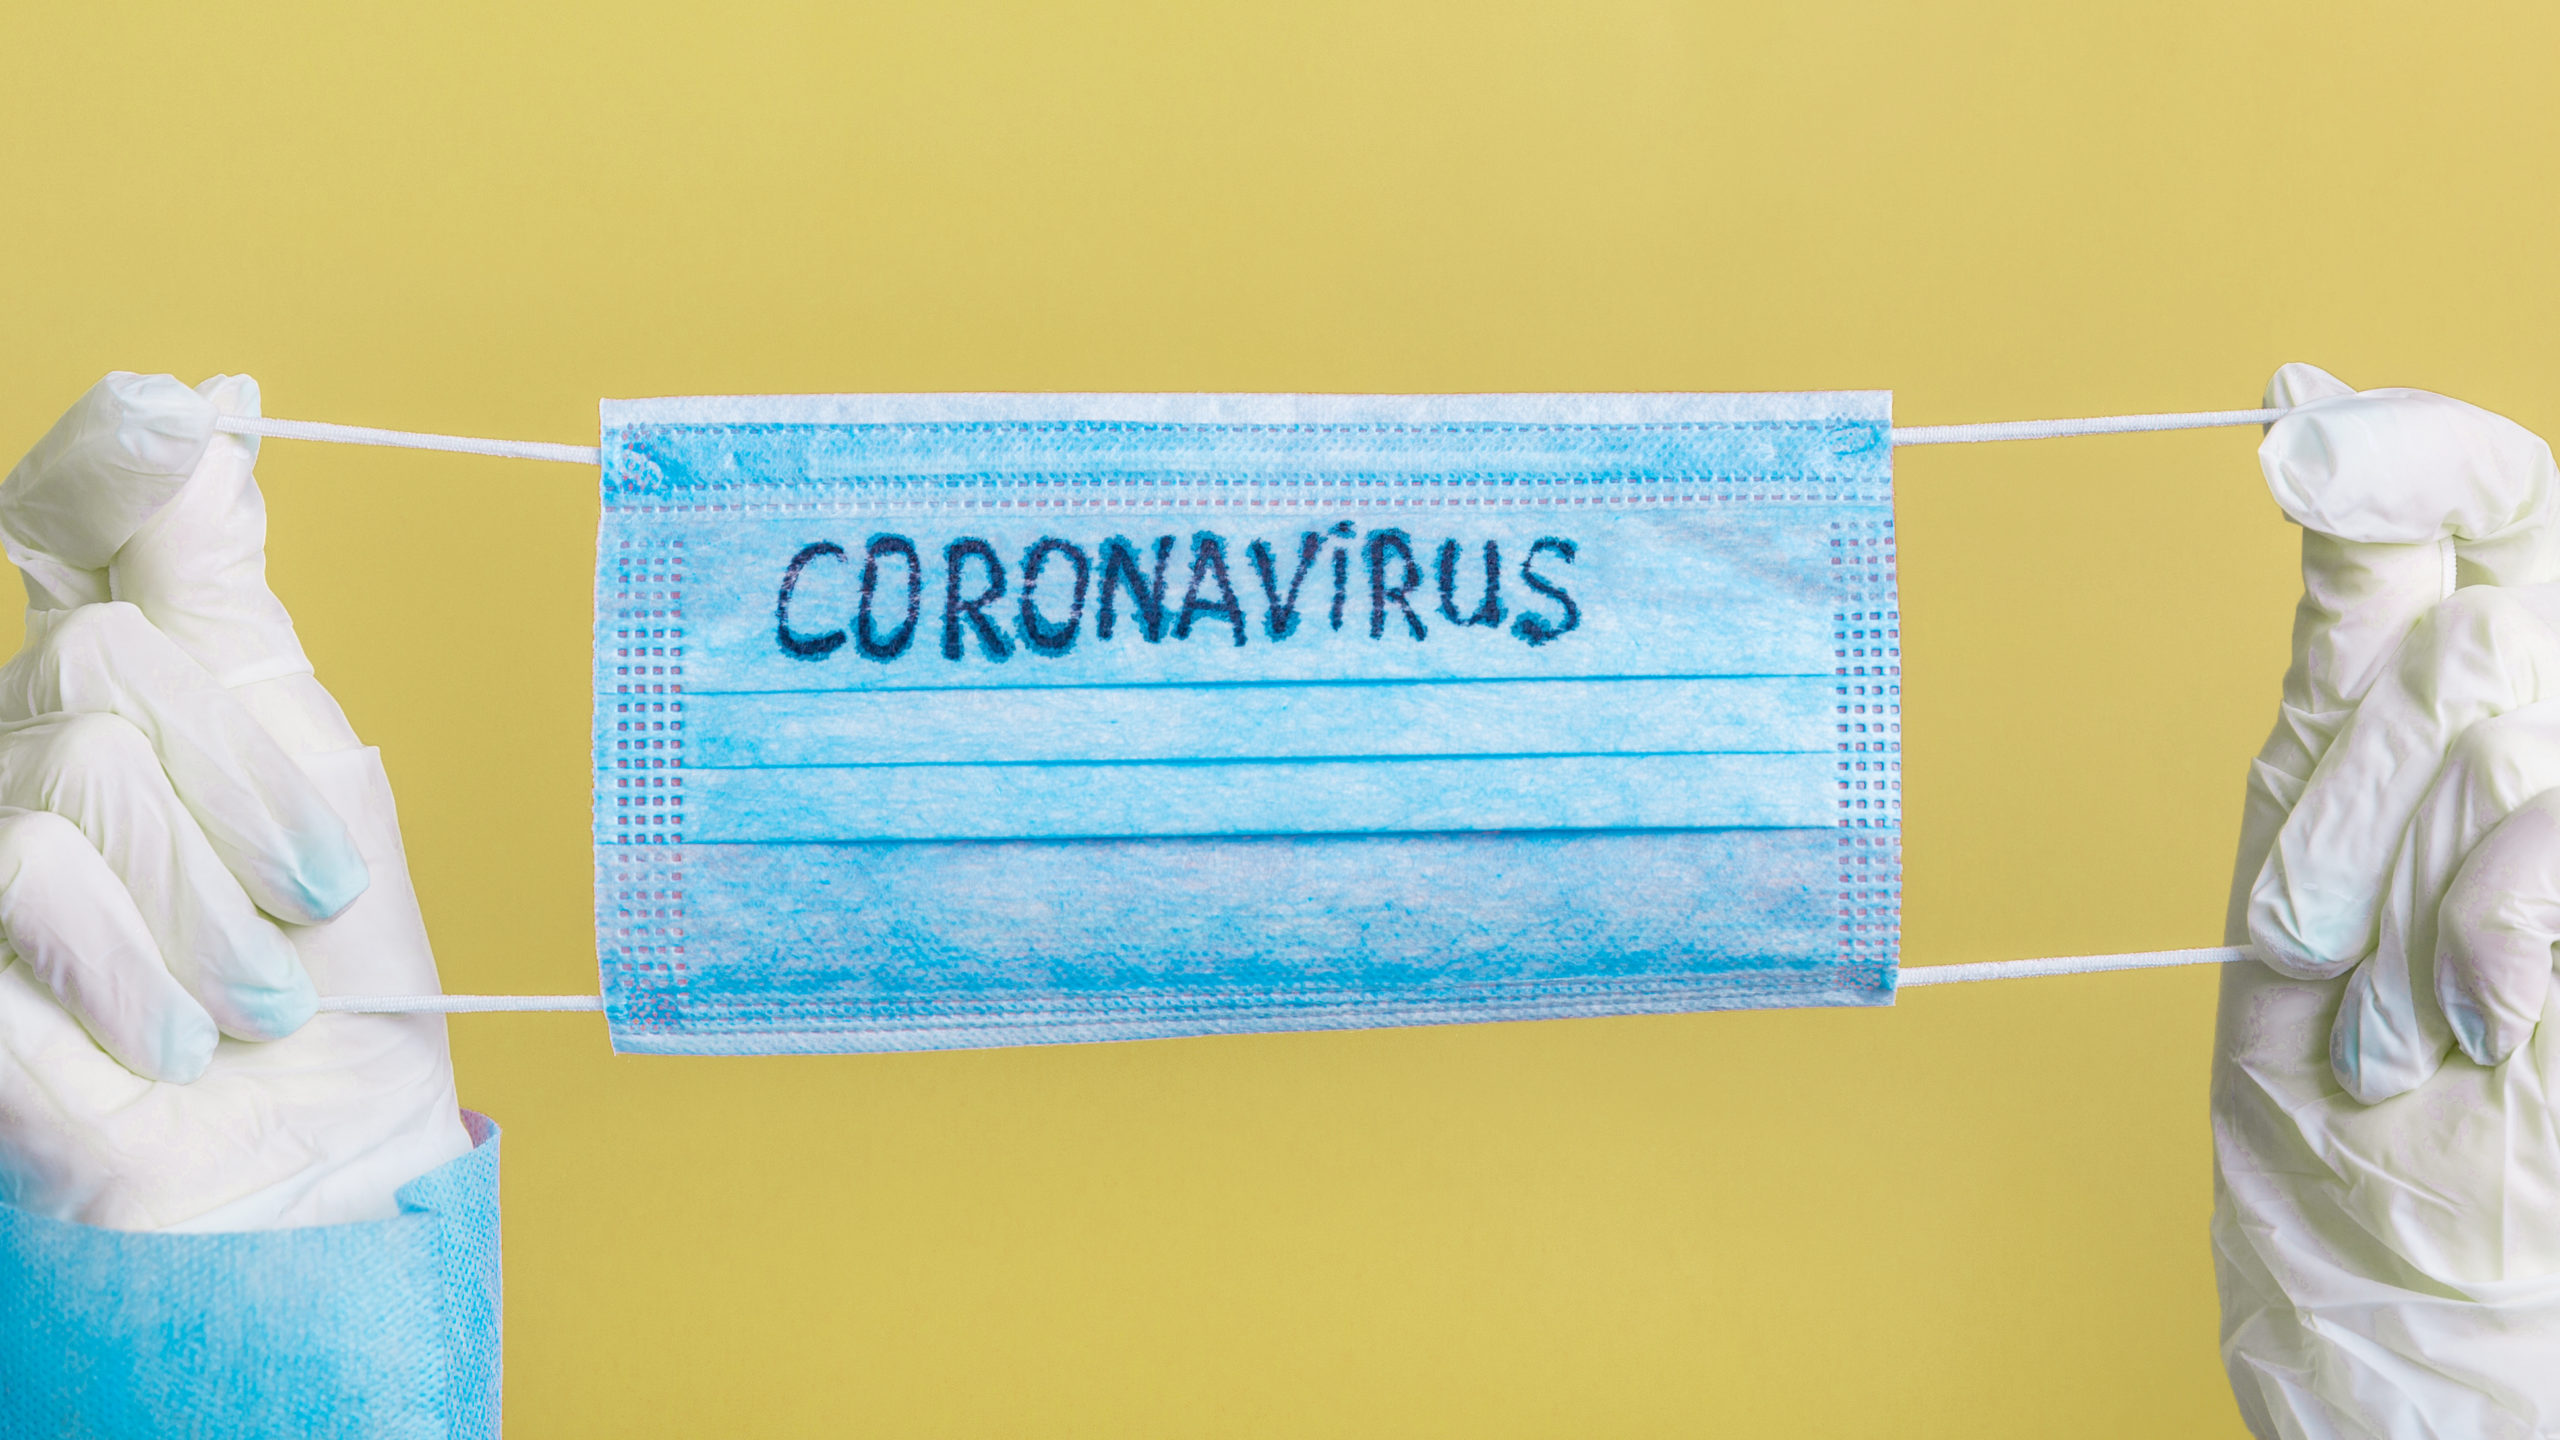 Mascherina coronavirus